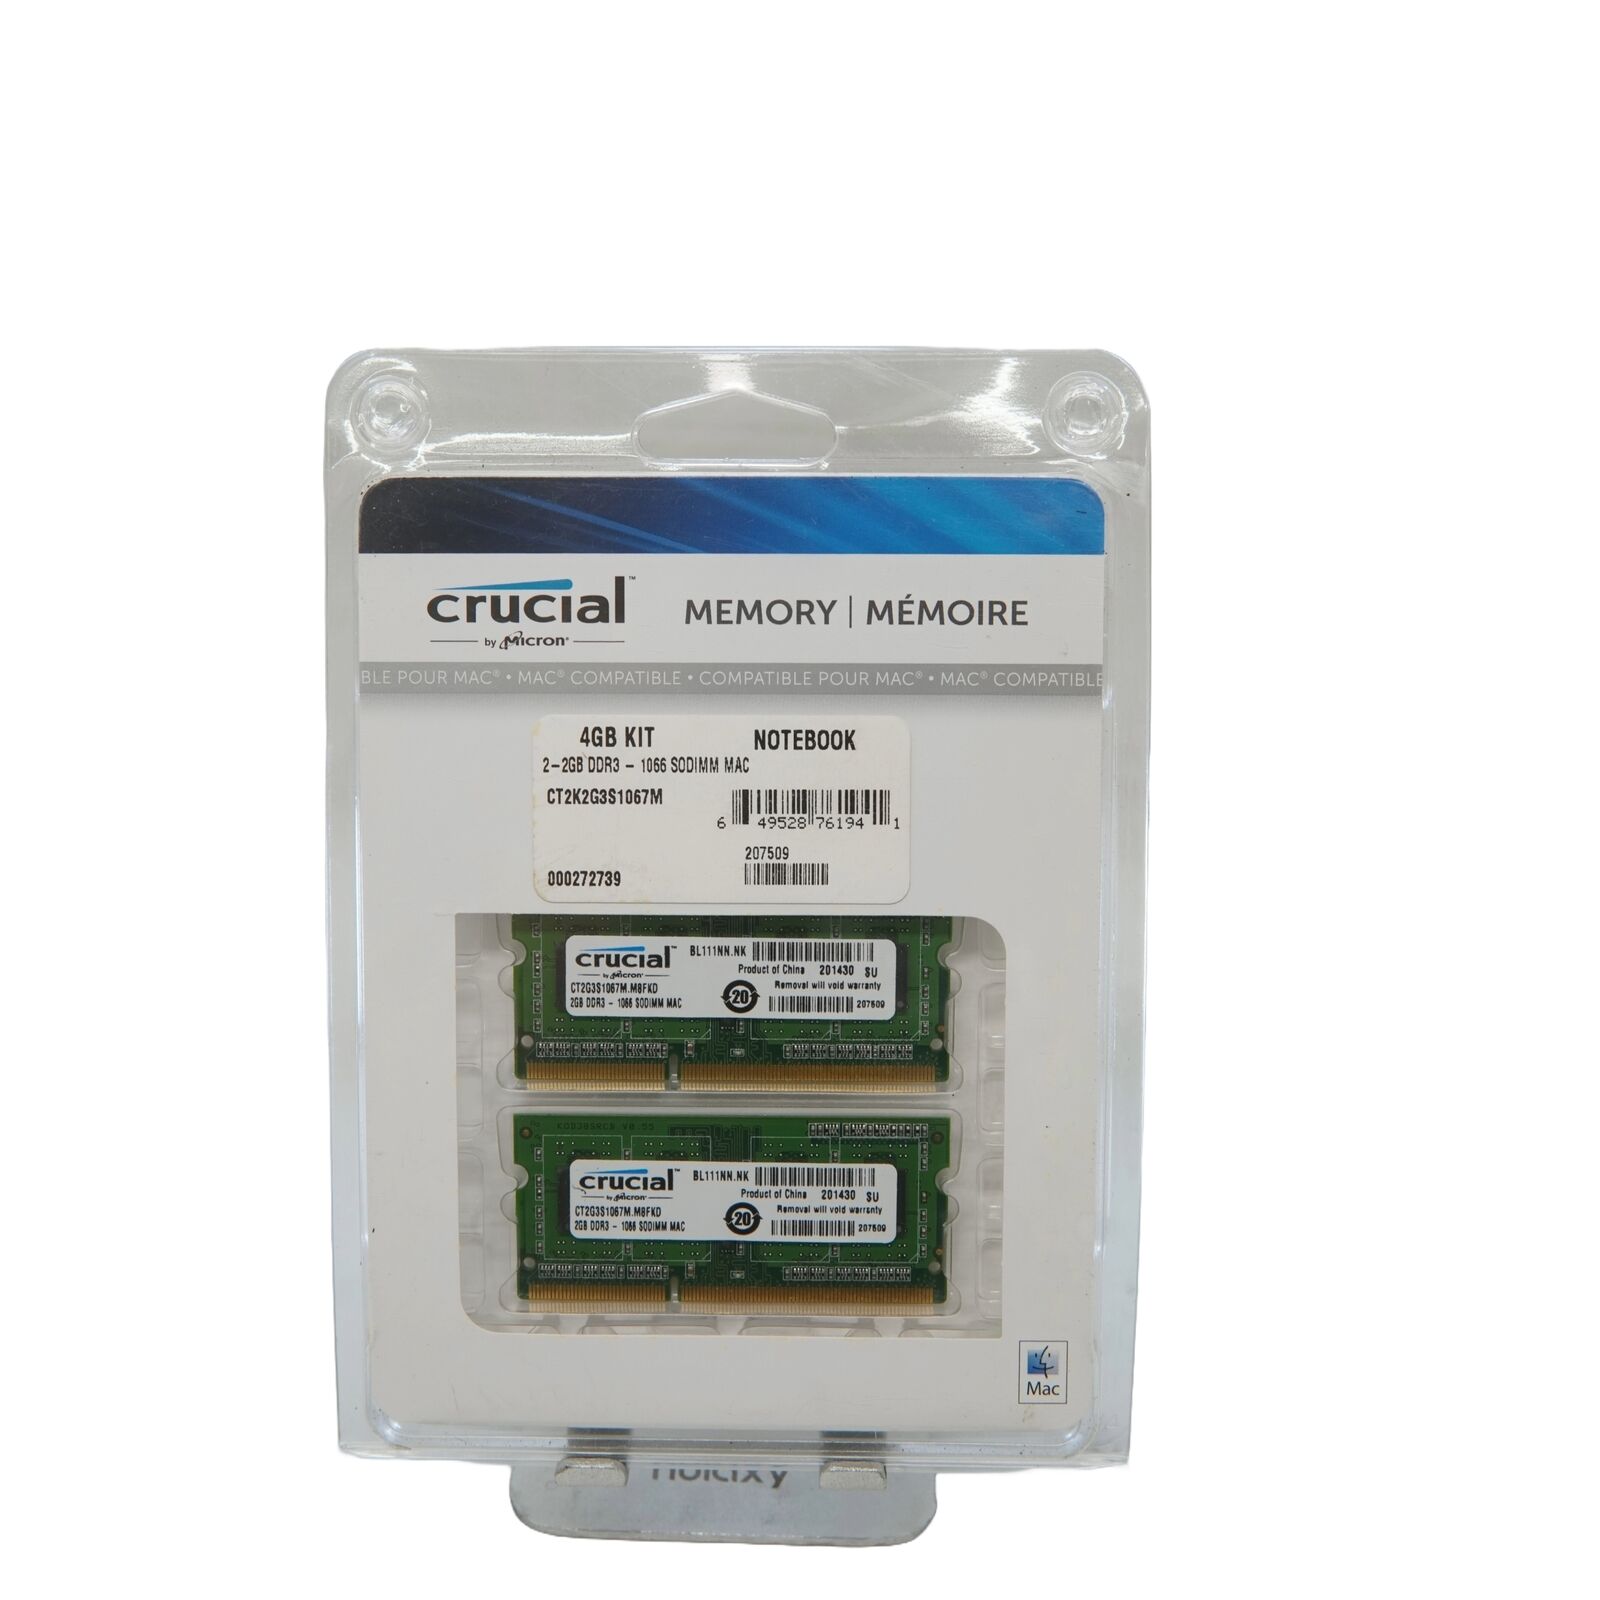 Crucial MEMORY 4GB Kit-(2x-2GB DDR3L-1066 SODIMM MAC)